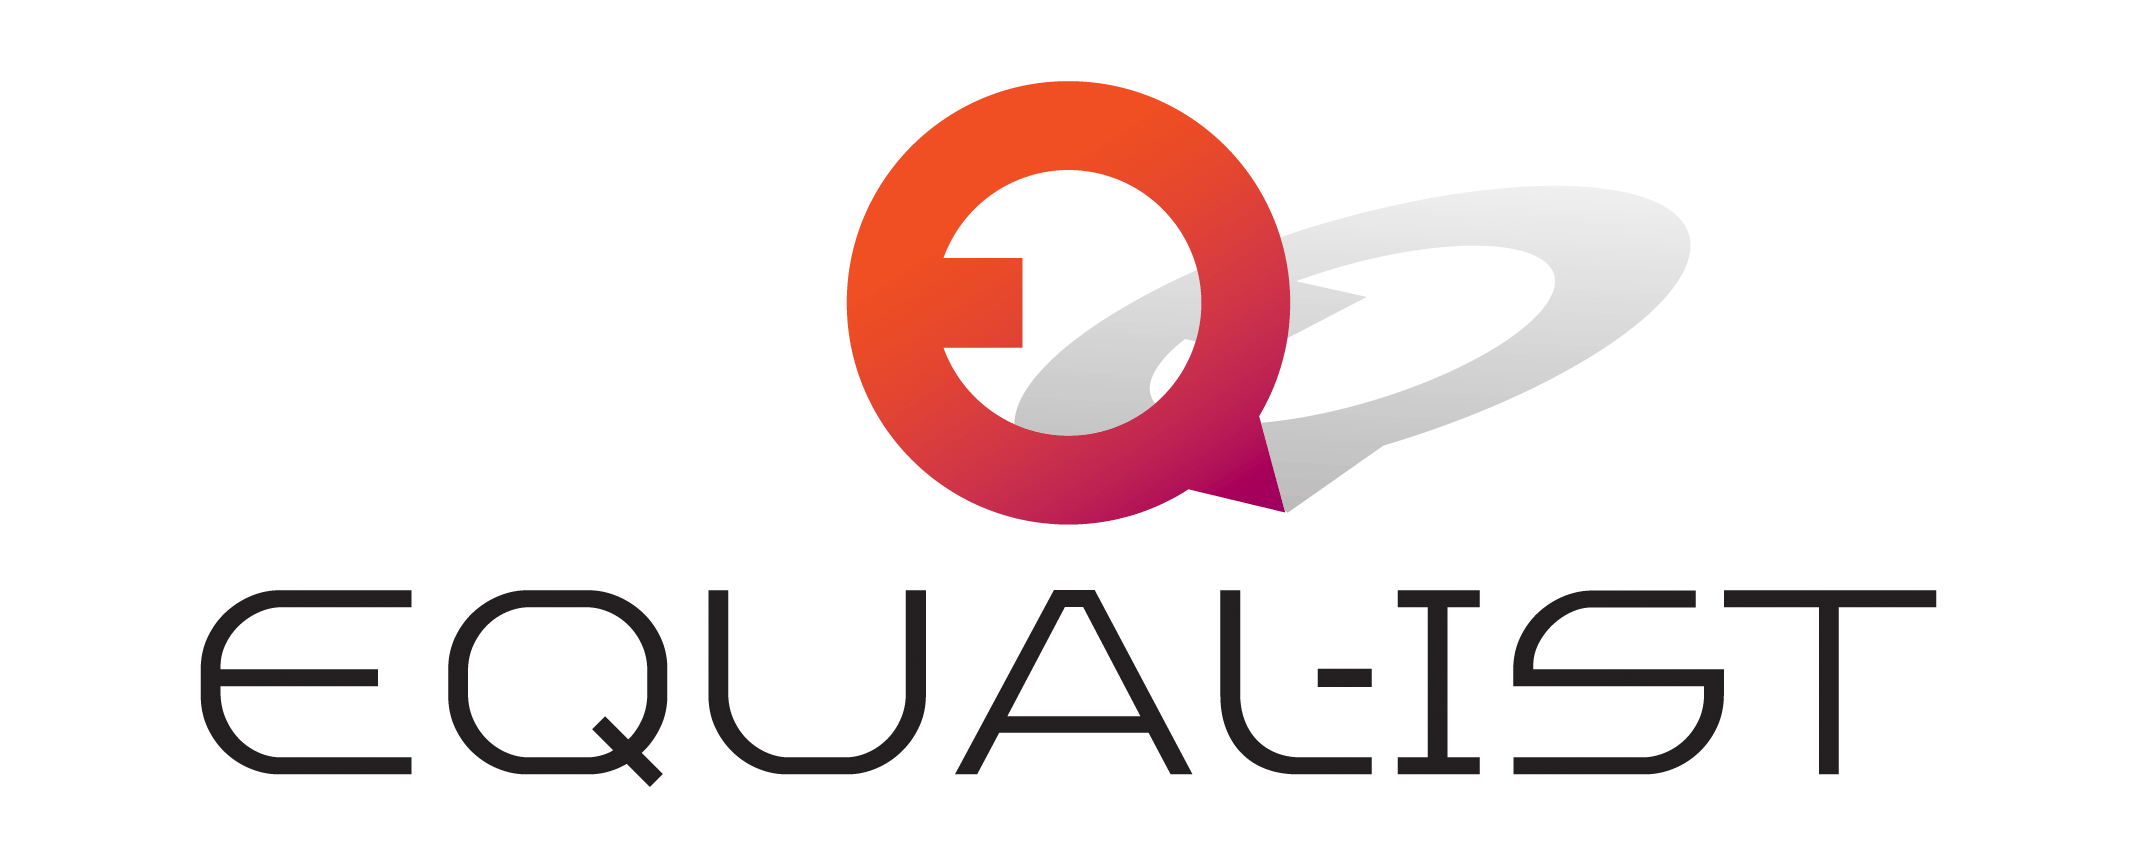 Ist Logo - EQUAL-IST | Gender Equality